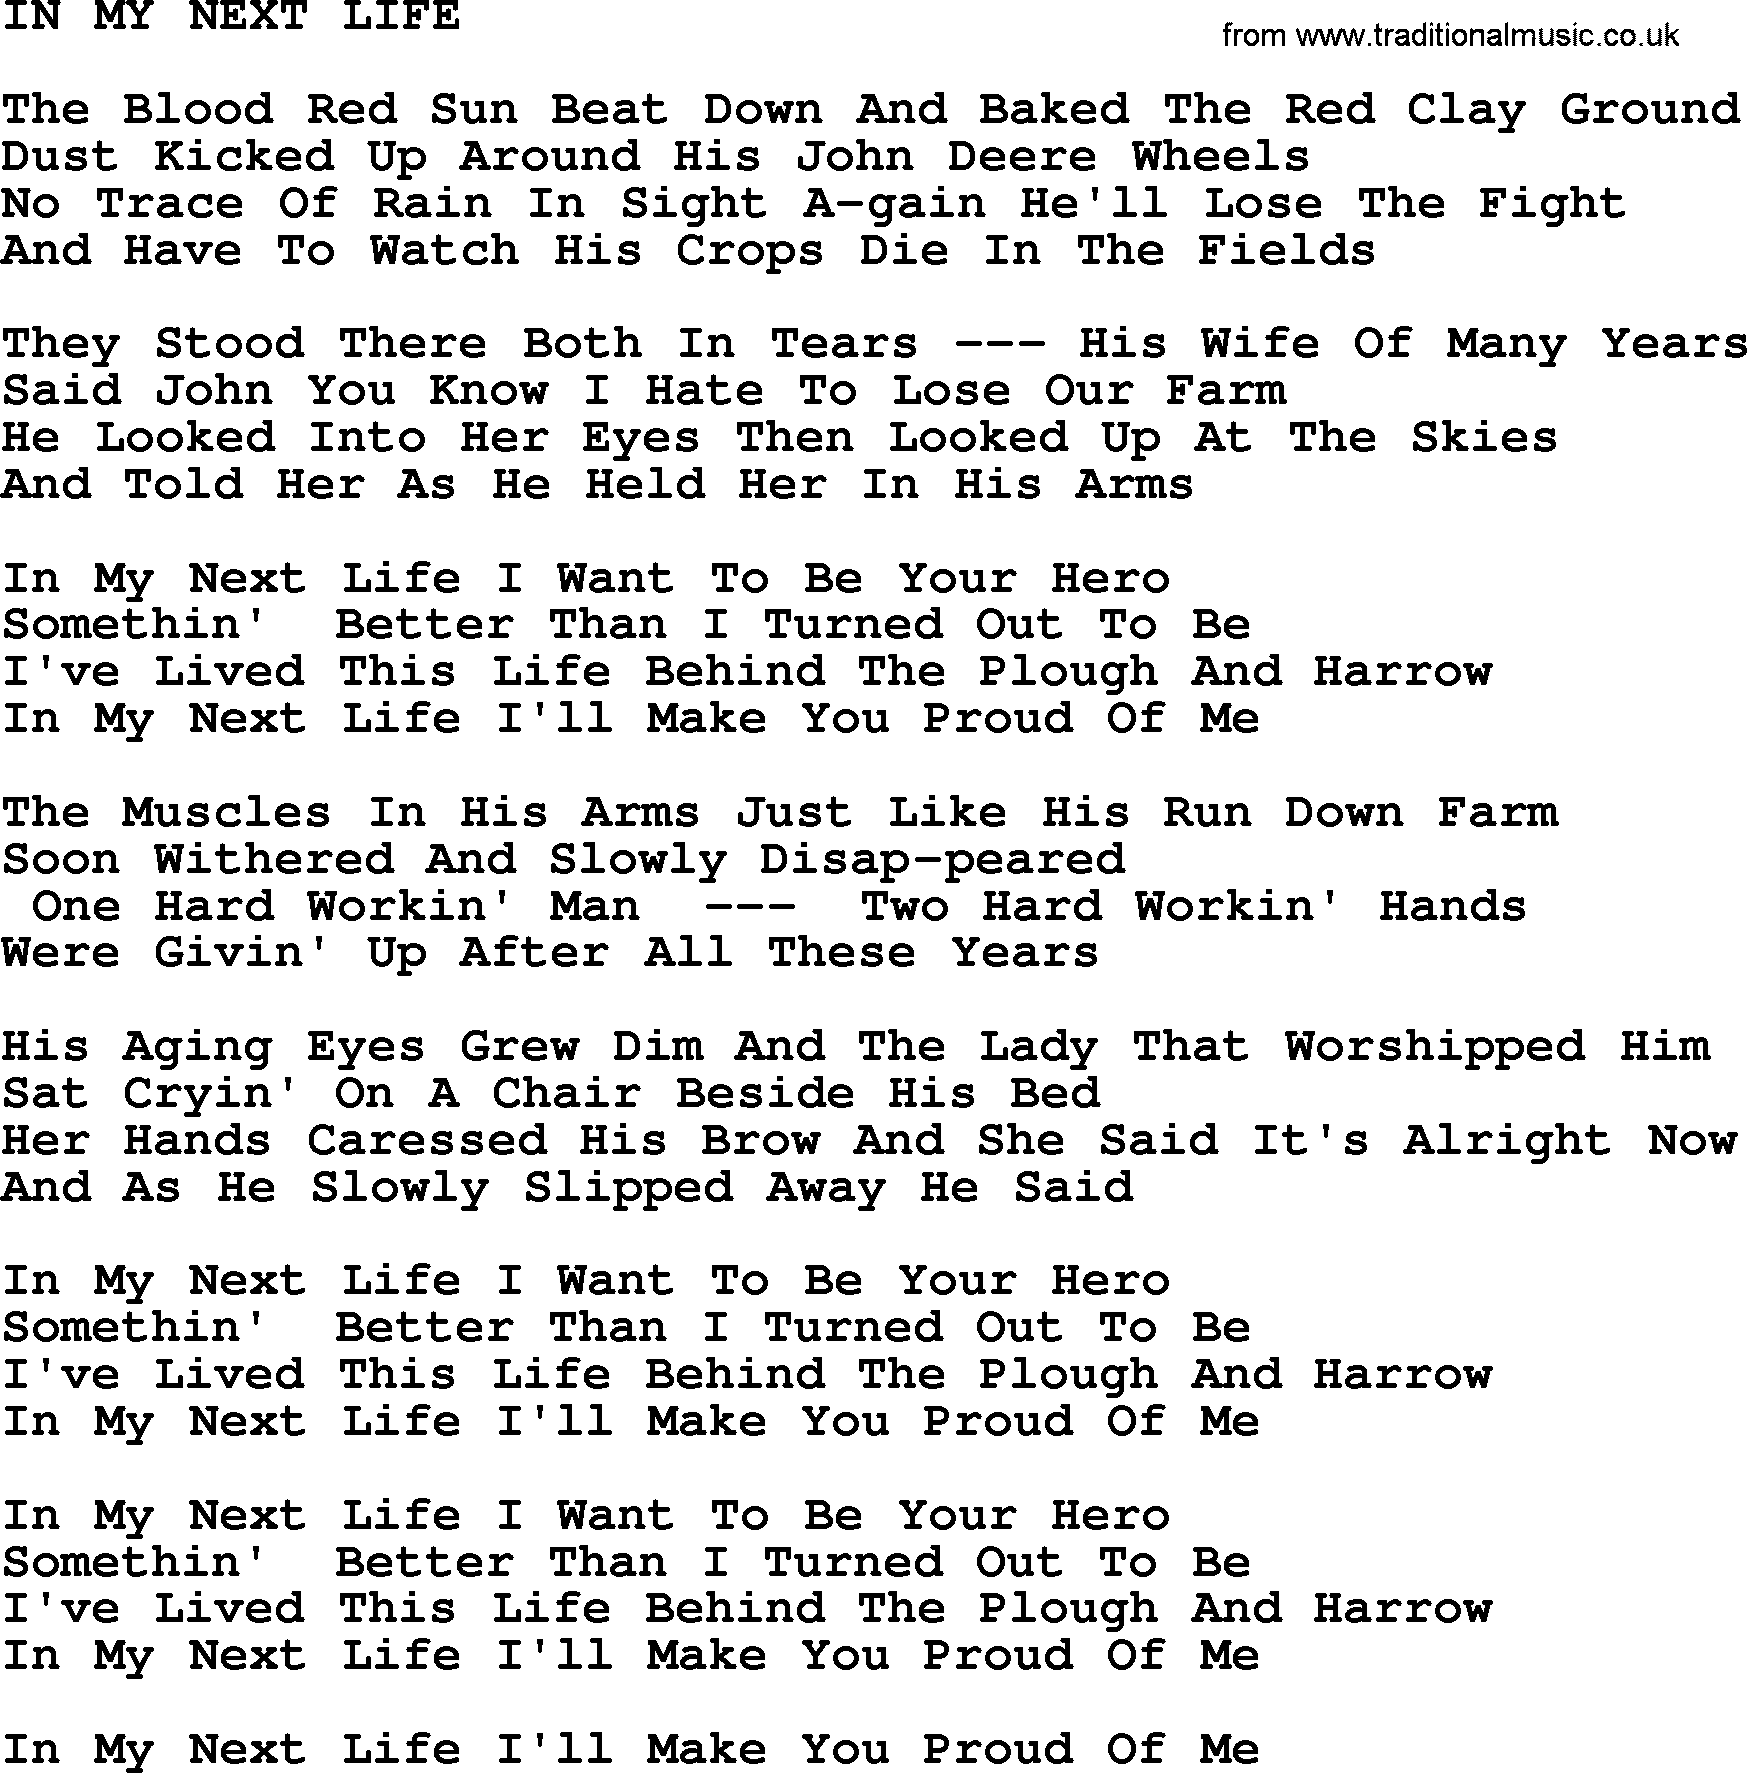 Merle Haggard song: In My Next Life, lyrics.